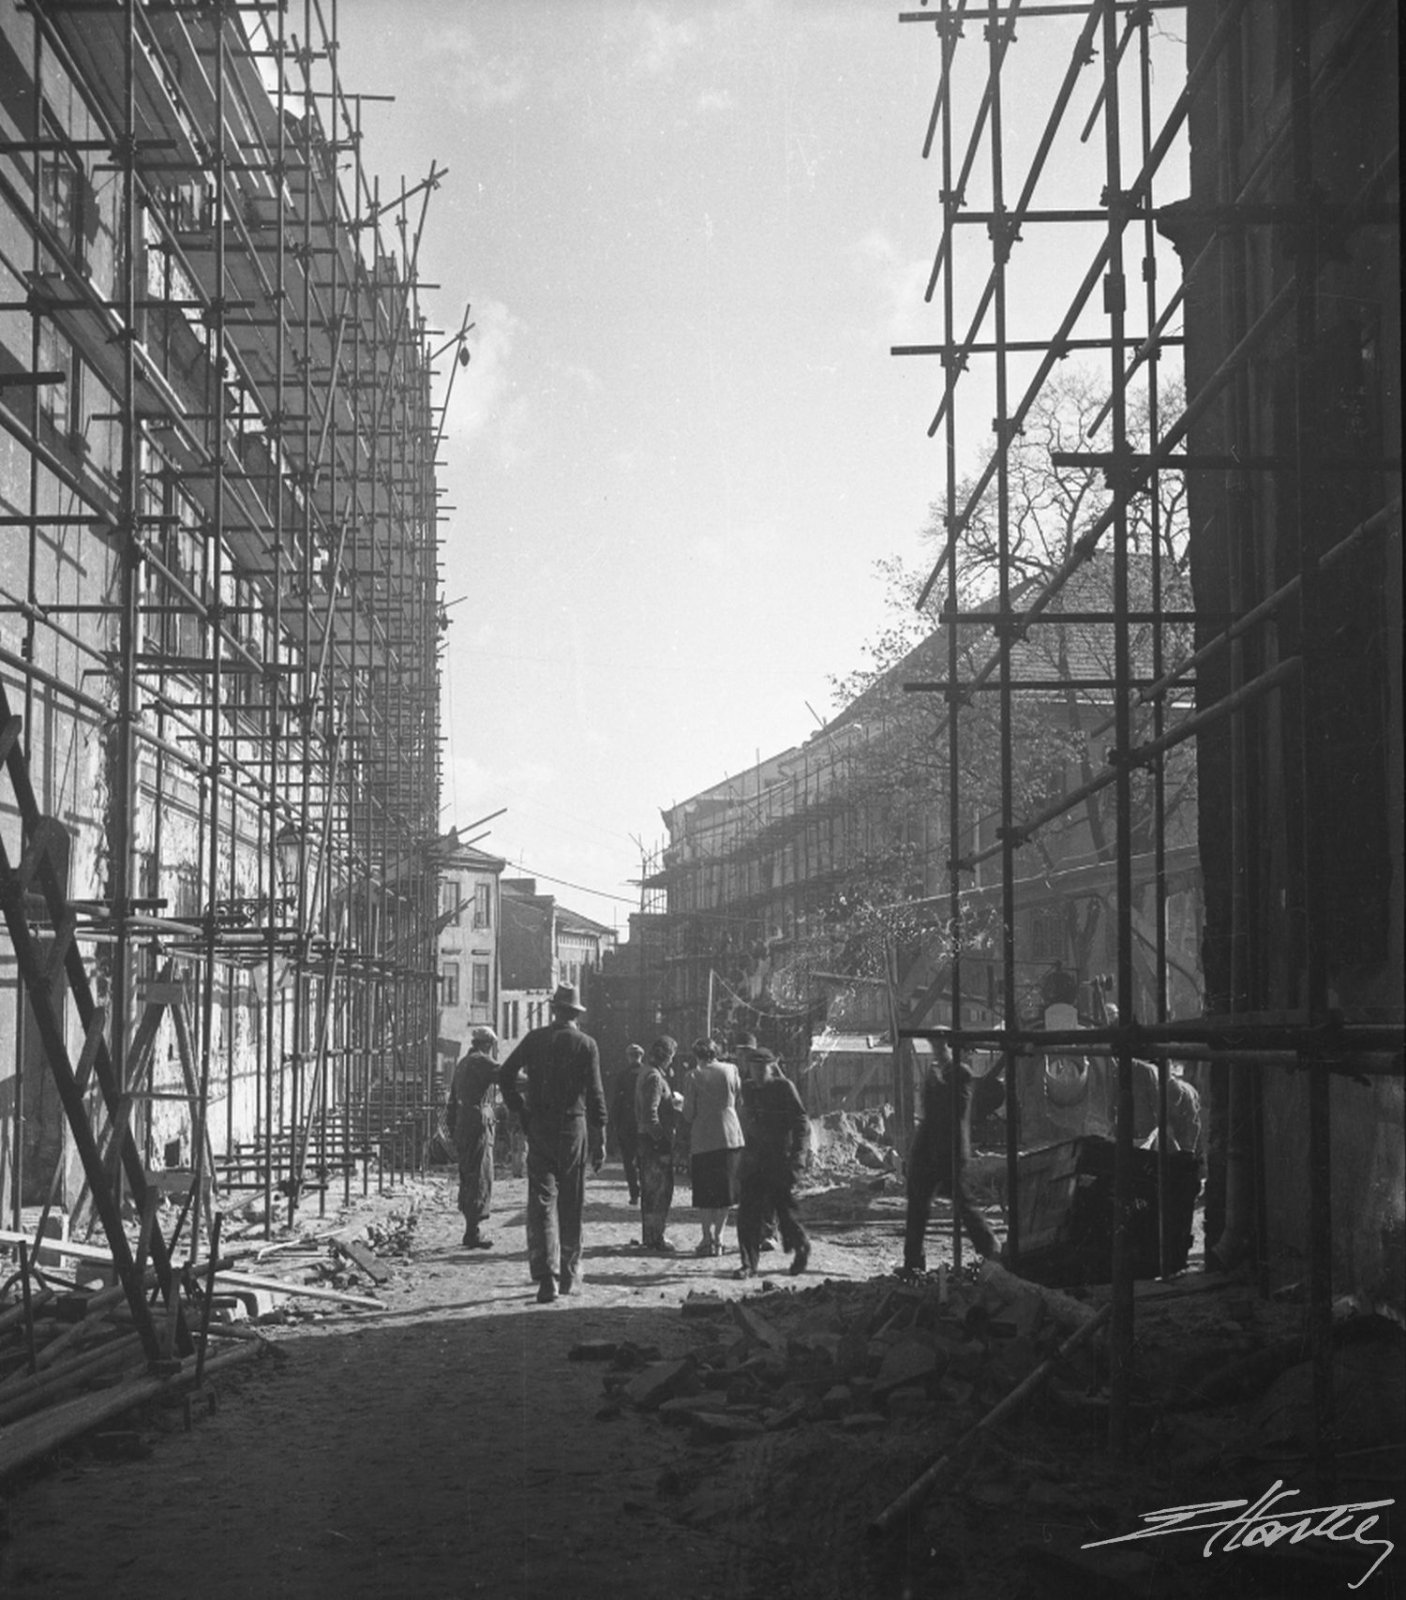 Odbudowa ulicy Grodzkiej w 1954 roku, fot. Edward Hartwig, zbiory Ewy Hartwig-Fijałkowskiej.